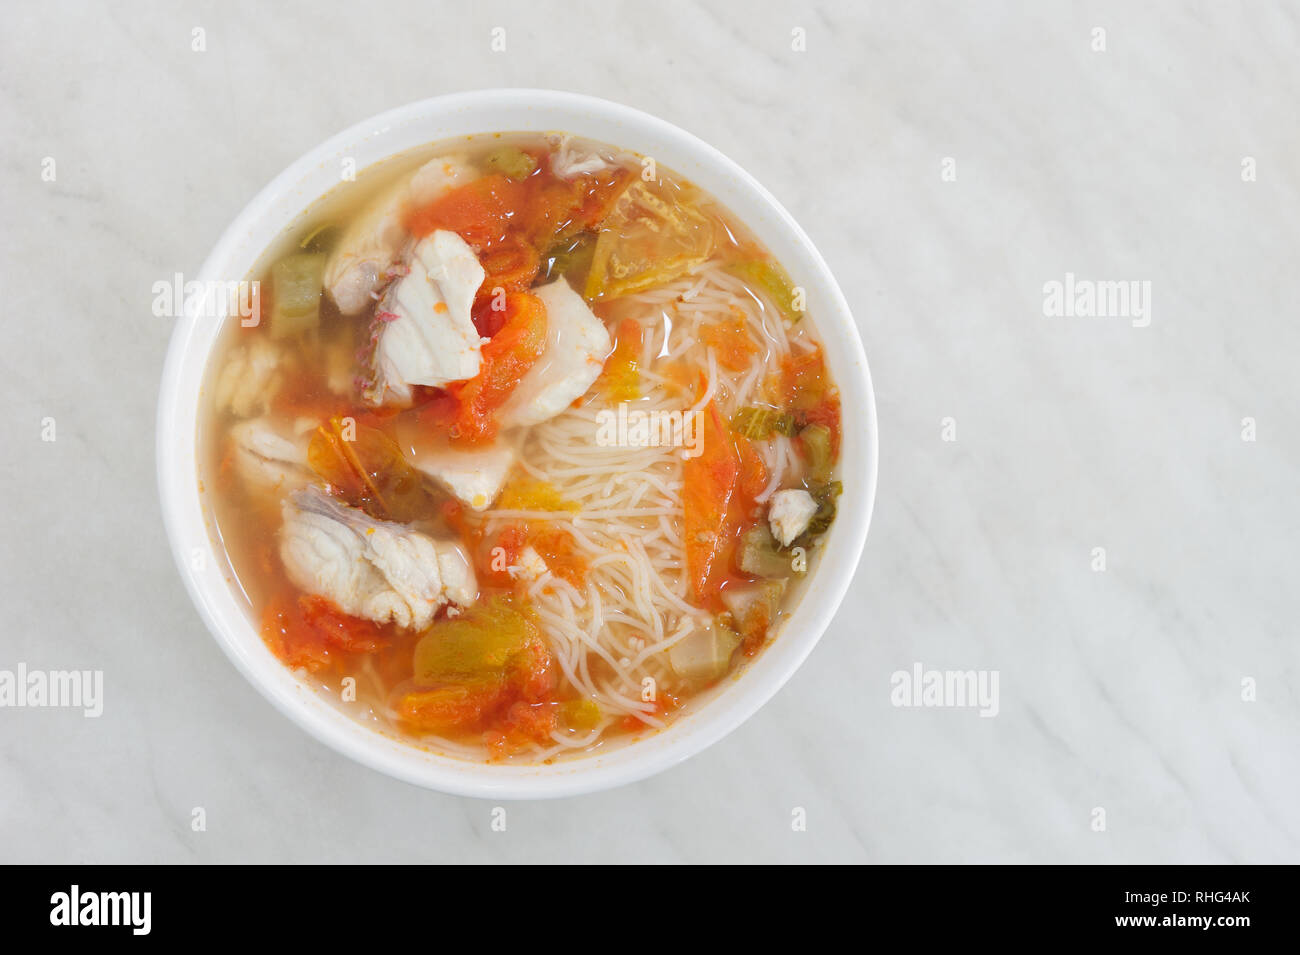 Malaysische köstliche Straßen essen eine würzige Frische Fische und Meeresfrüchte Suppe auf Soße heiß tomyam mit Reis, Nudeln oder Reis Nudeln. Stockfoto